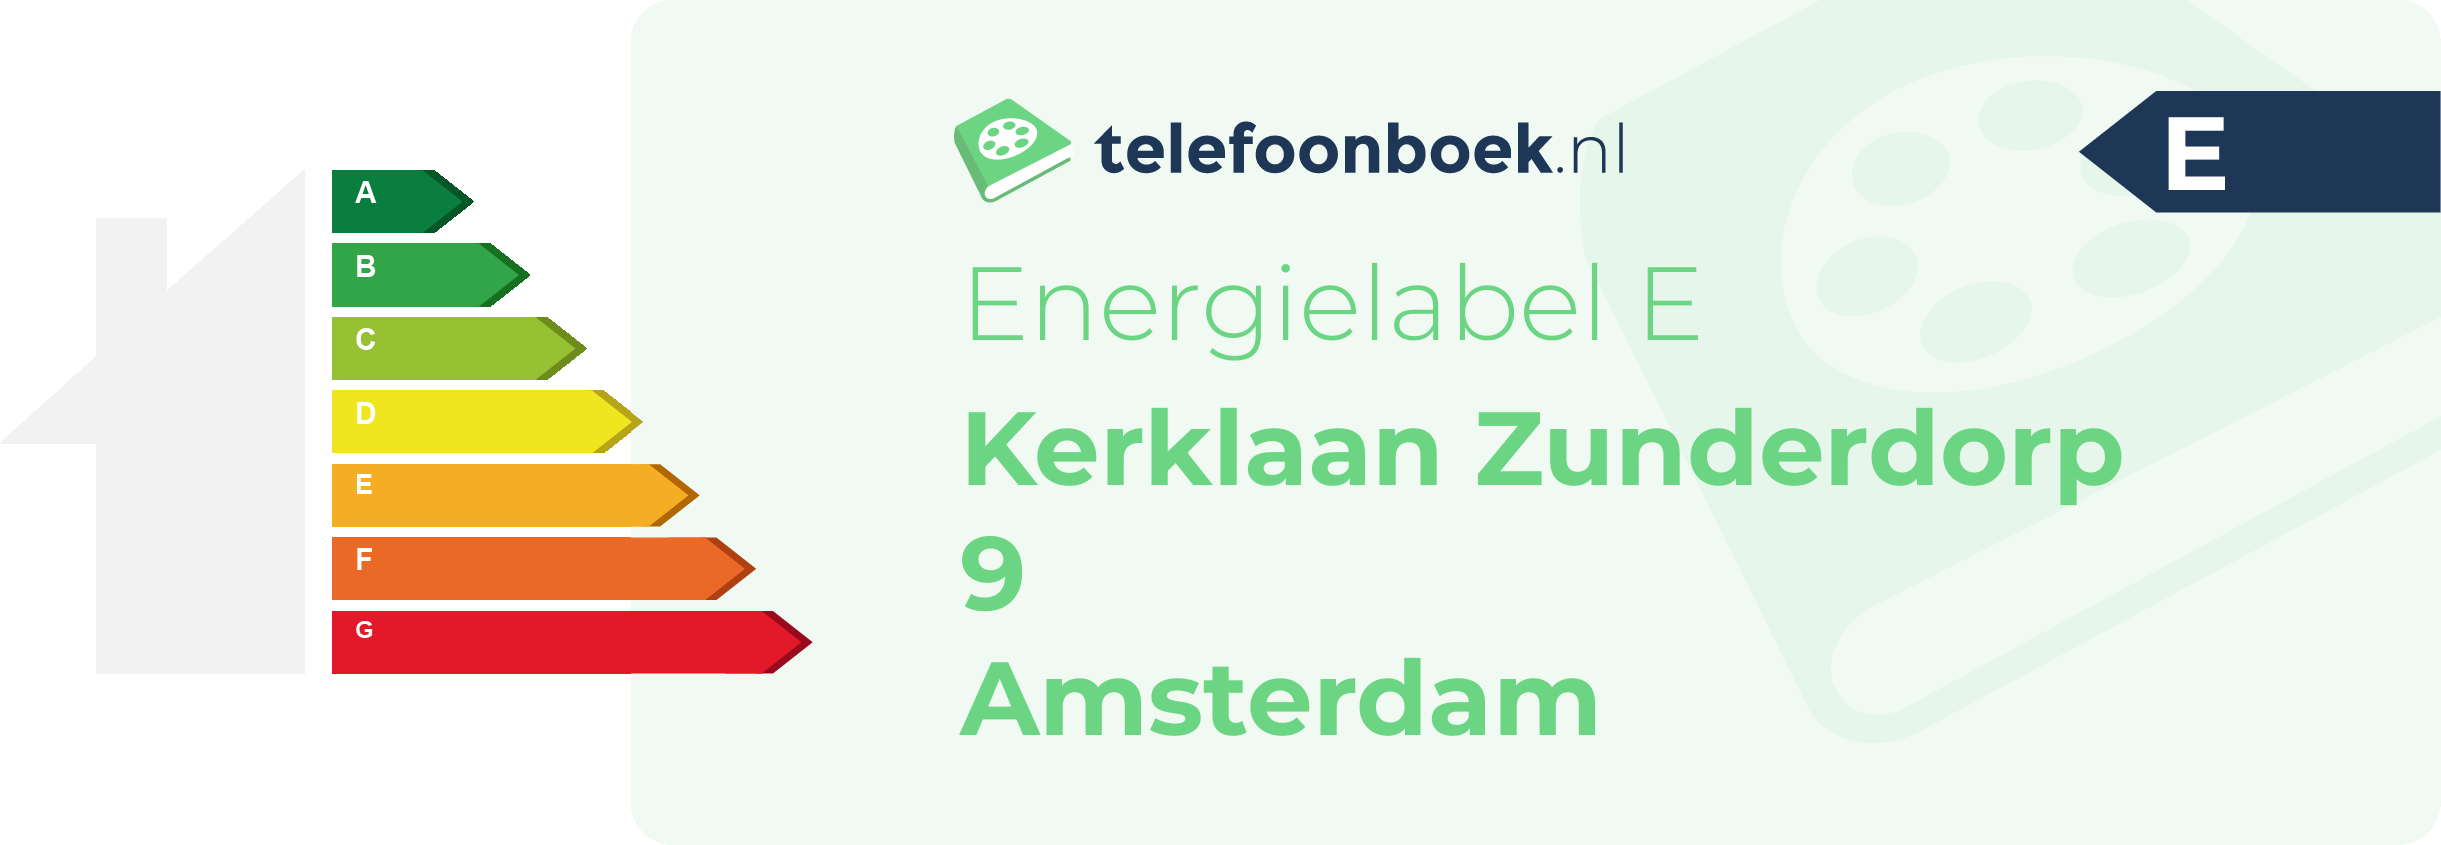 Energielabel Kerklaan Zunderdorp 9 Amsterdam